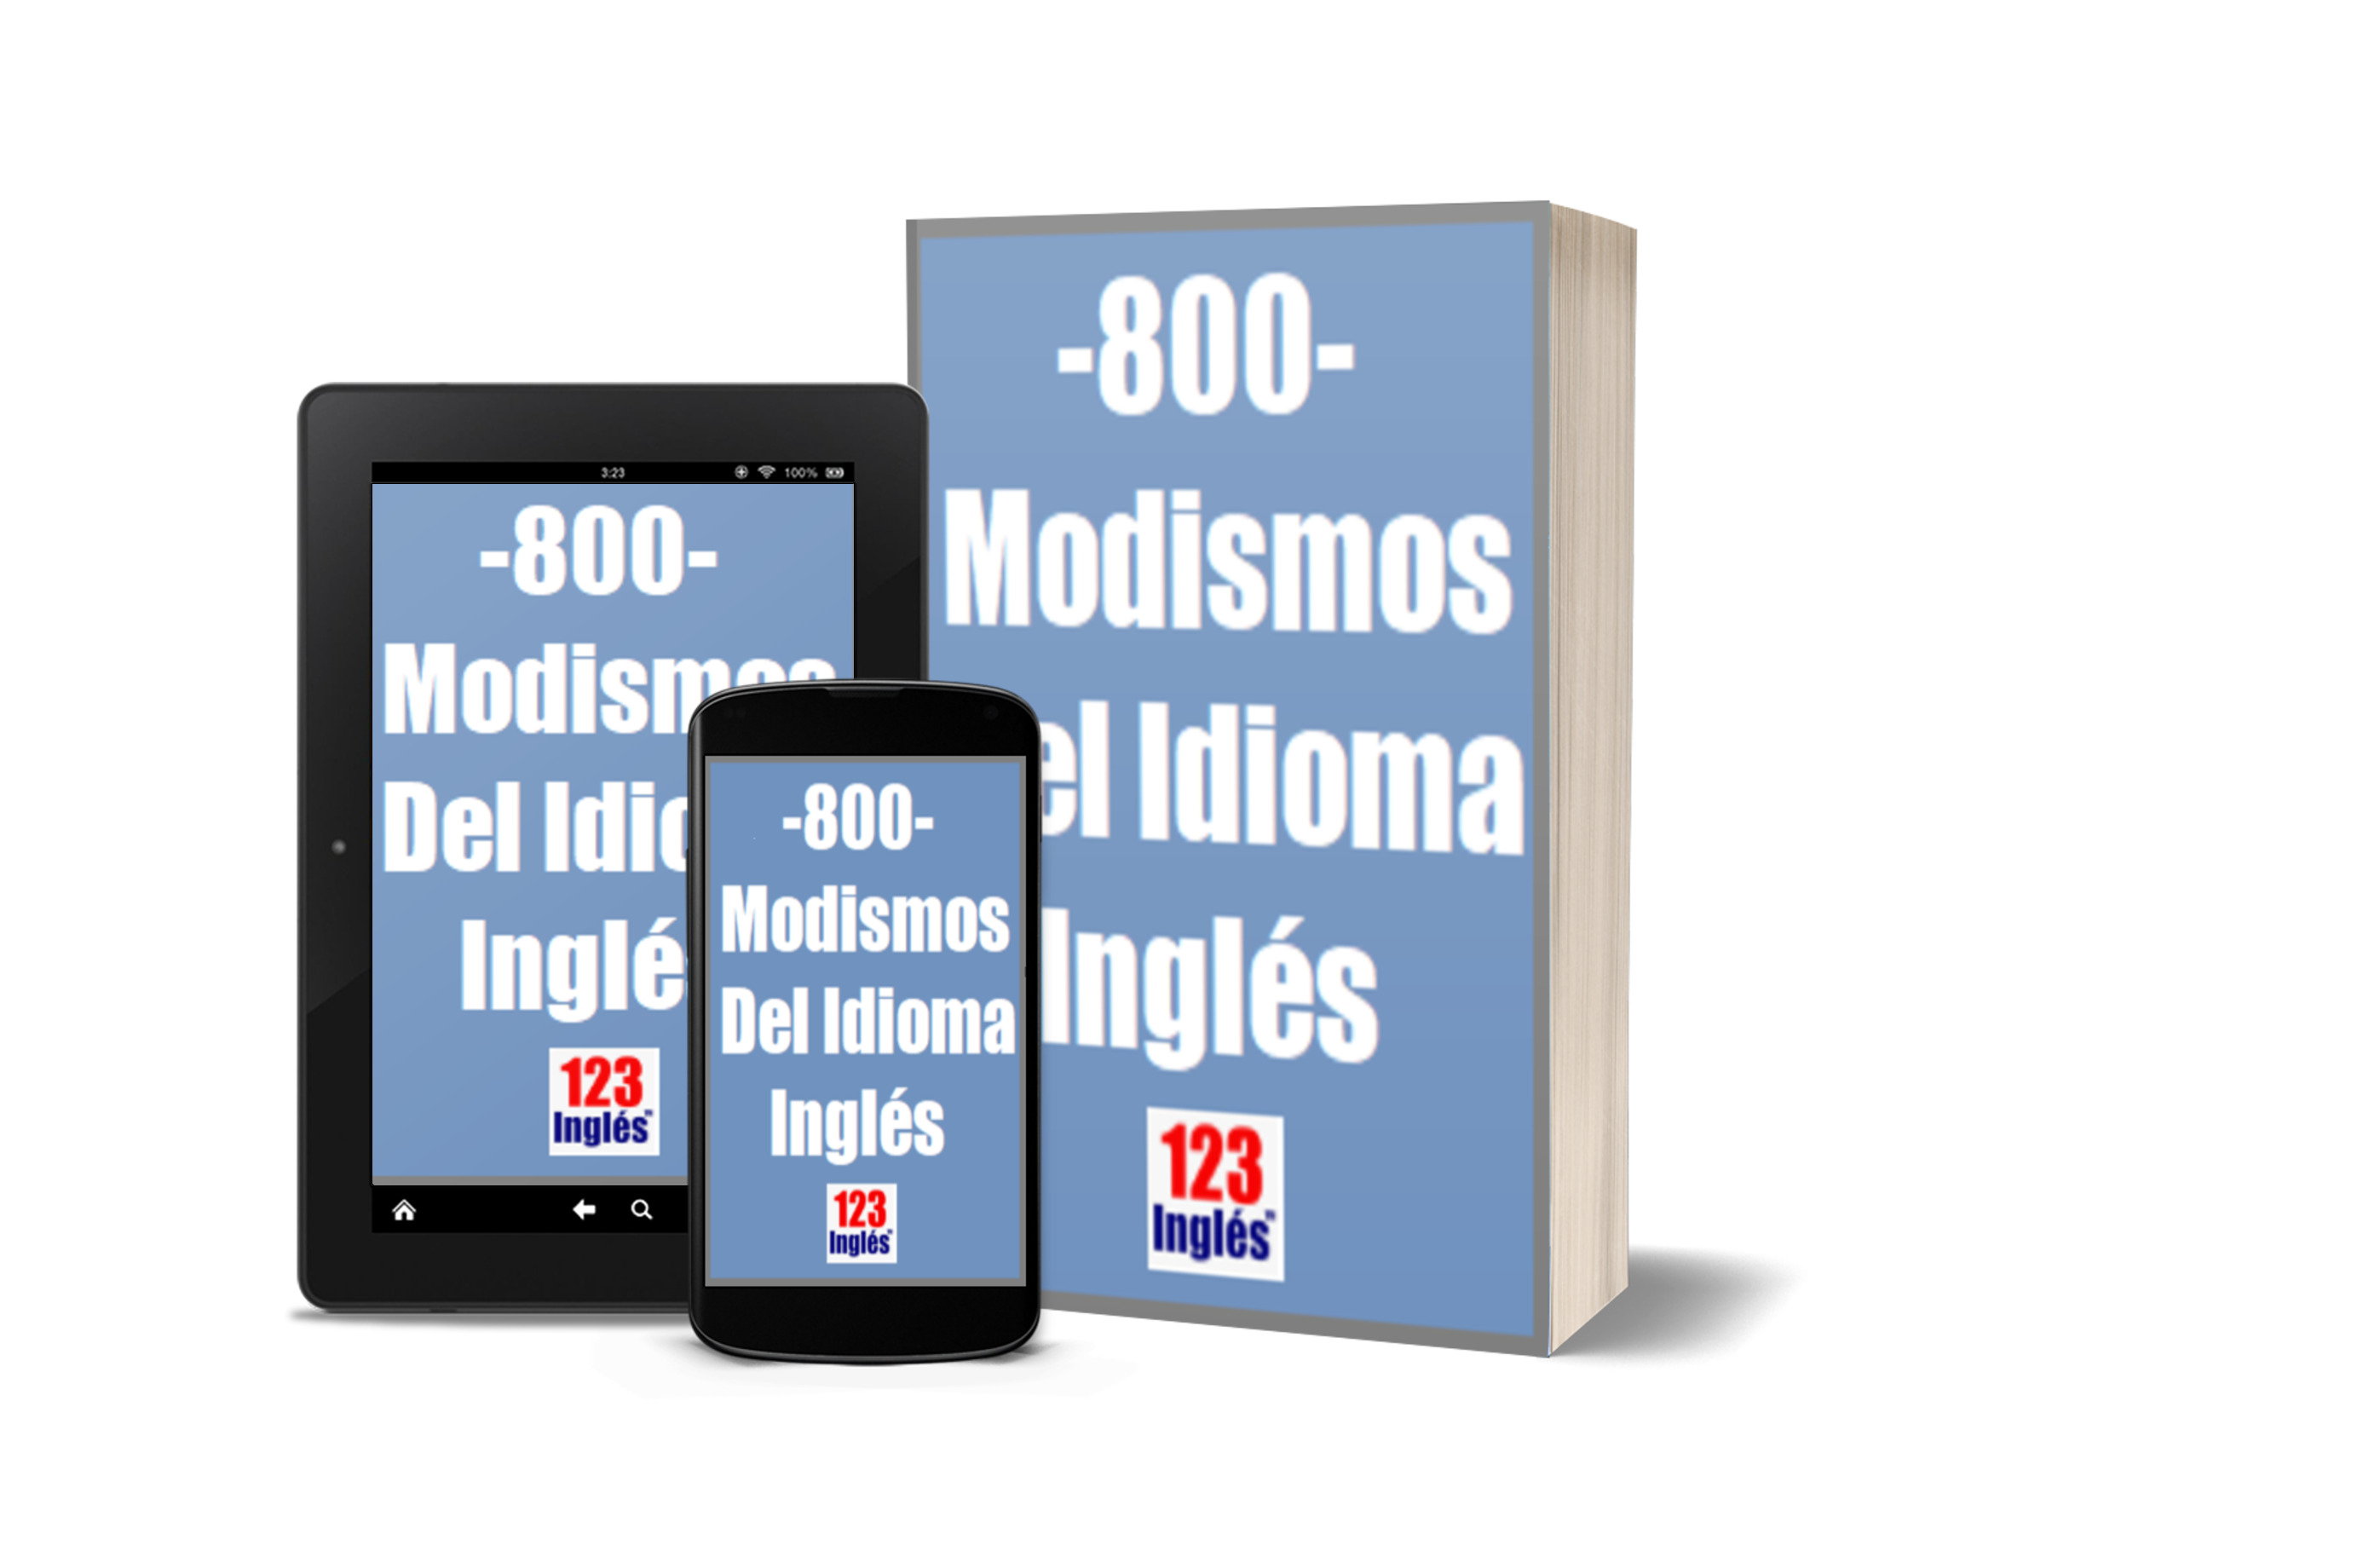 800 modismos del idioma inglés